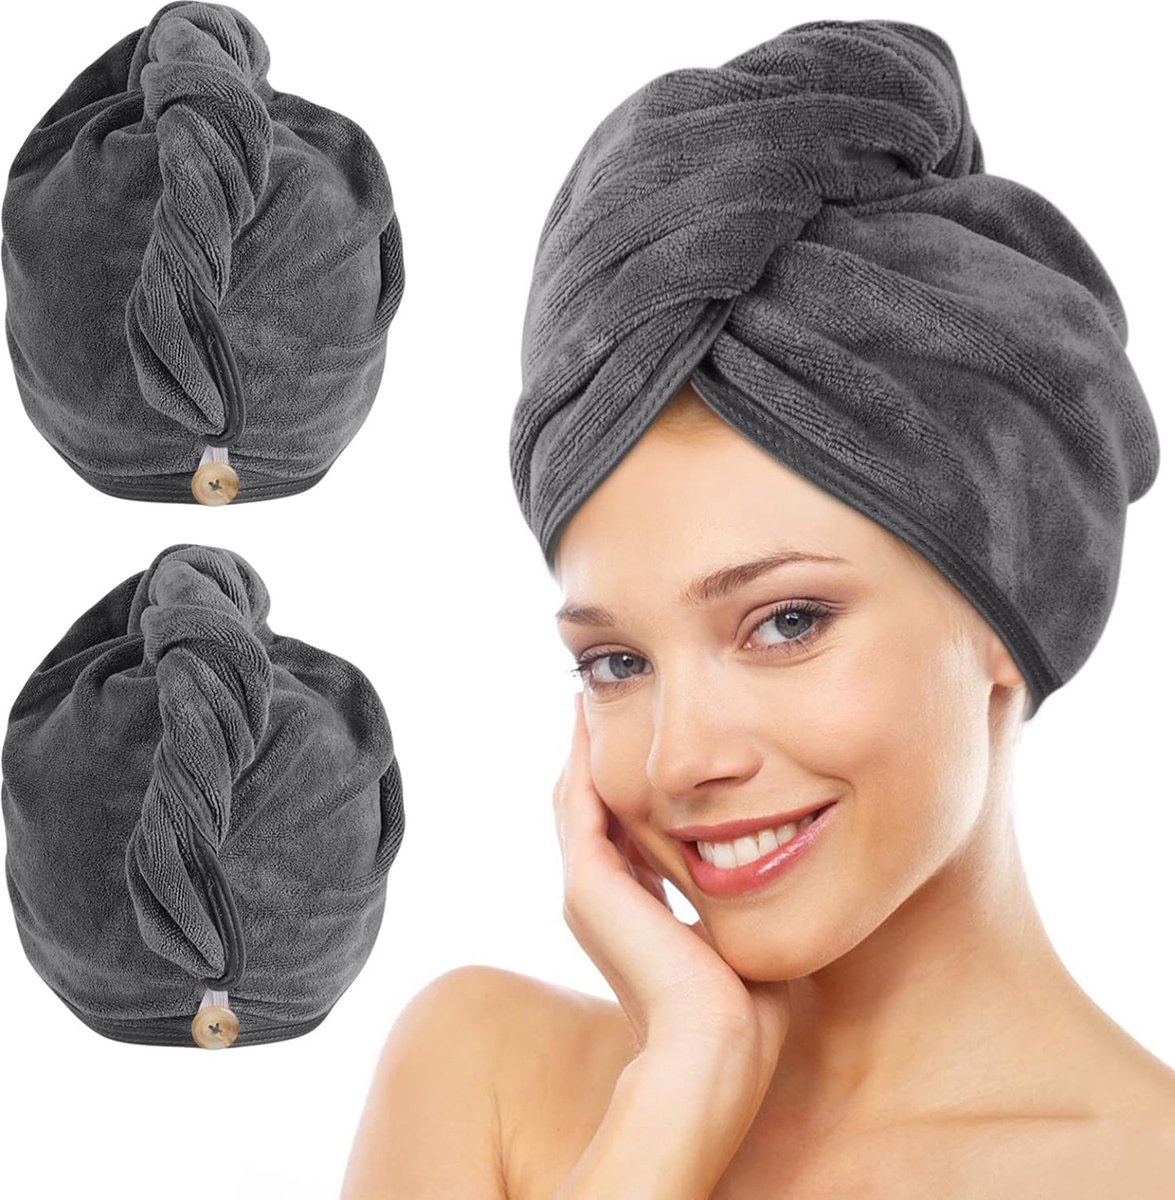 Handdoek met knoop XL microvezel haartulband voor het haar sneldrogende haarhanddoek super absorberend en zacht voor lang en dicht haar 30cmx70cm 2 stuks grijs